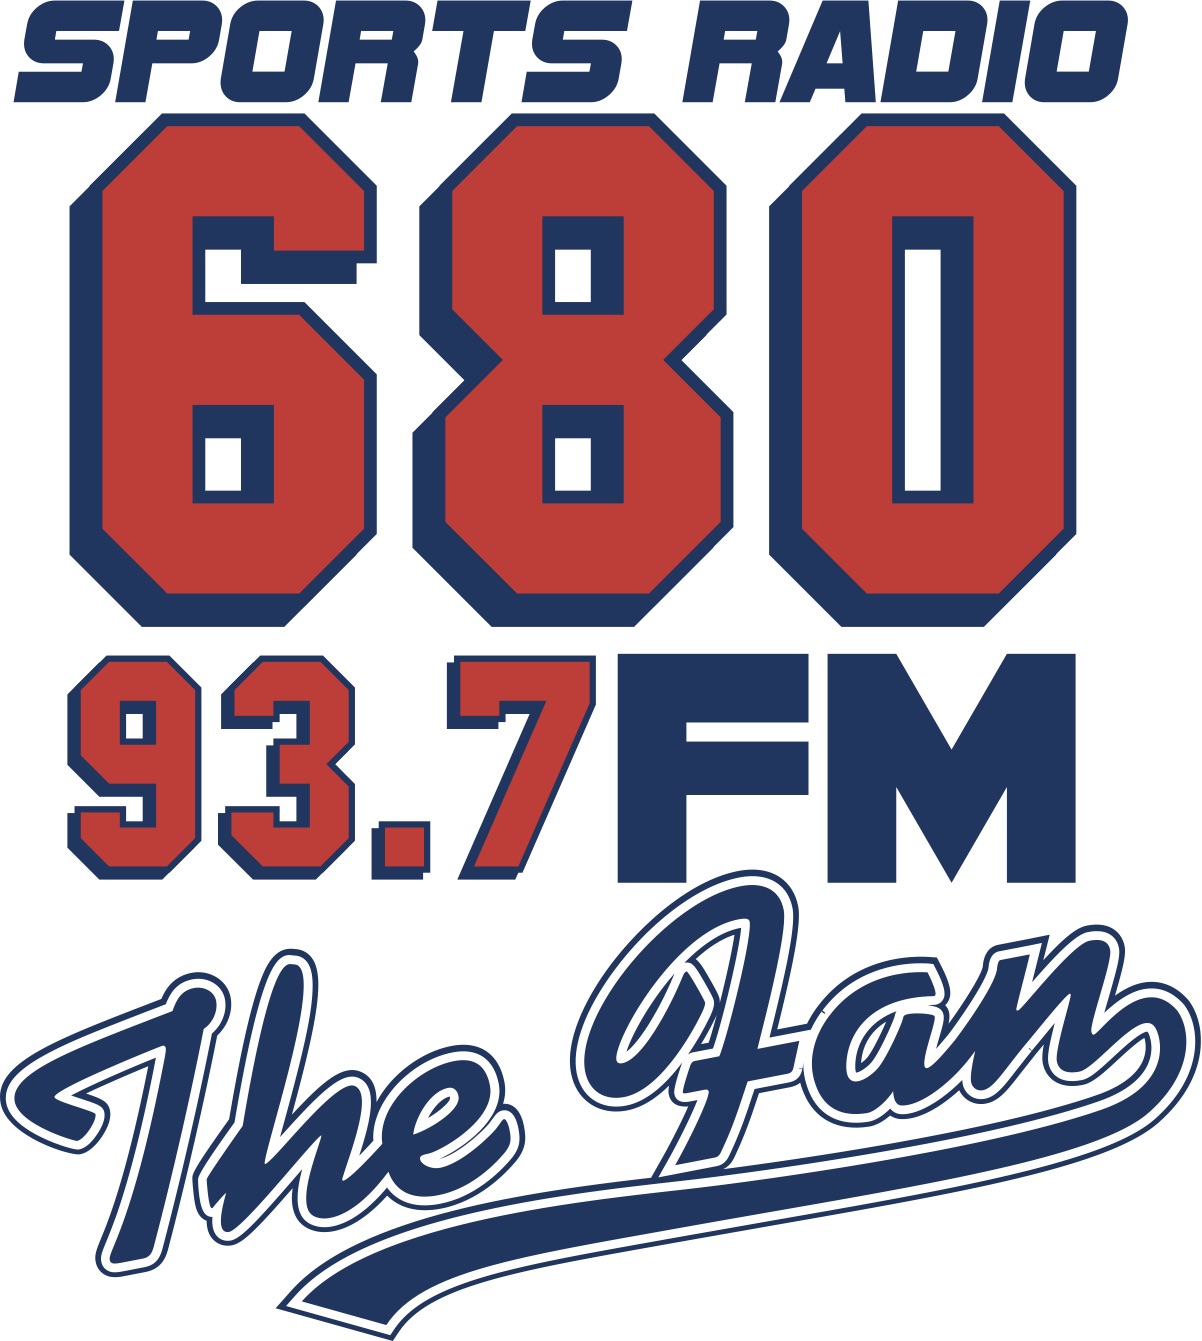 680 the fan radio logo - 48in48